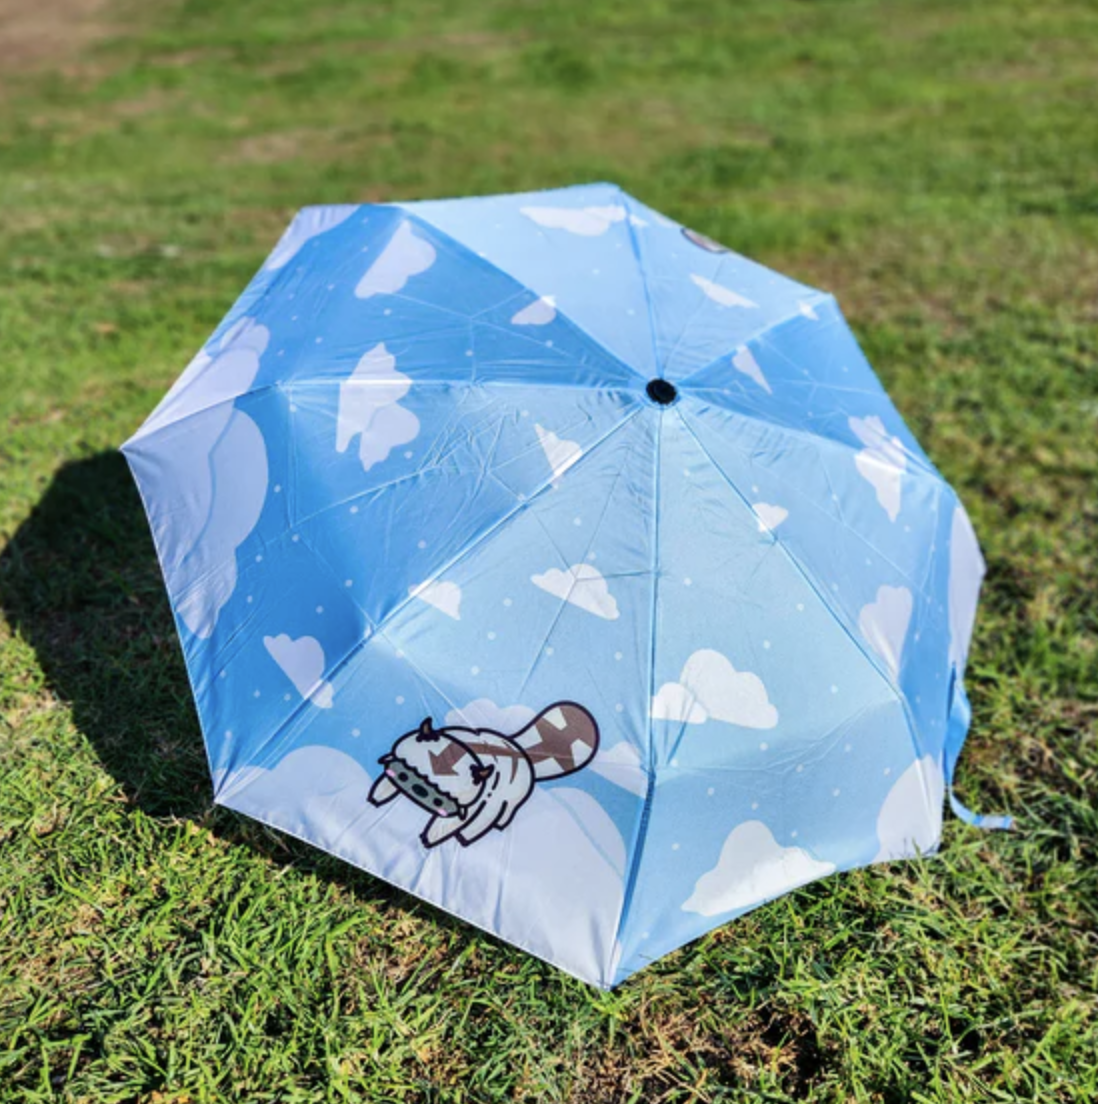 Blue umbrella featuring clouds and a chibi appa.